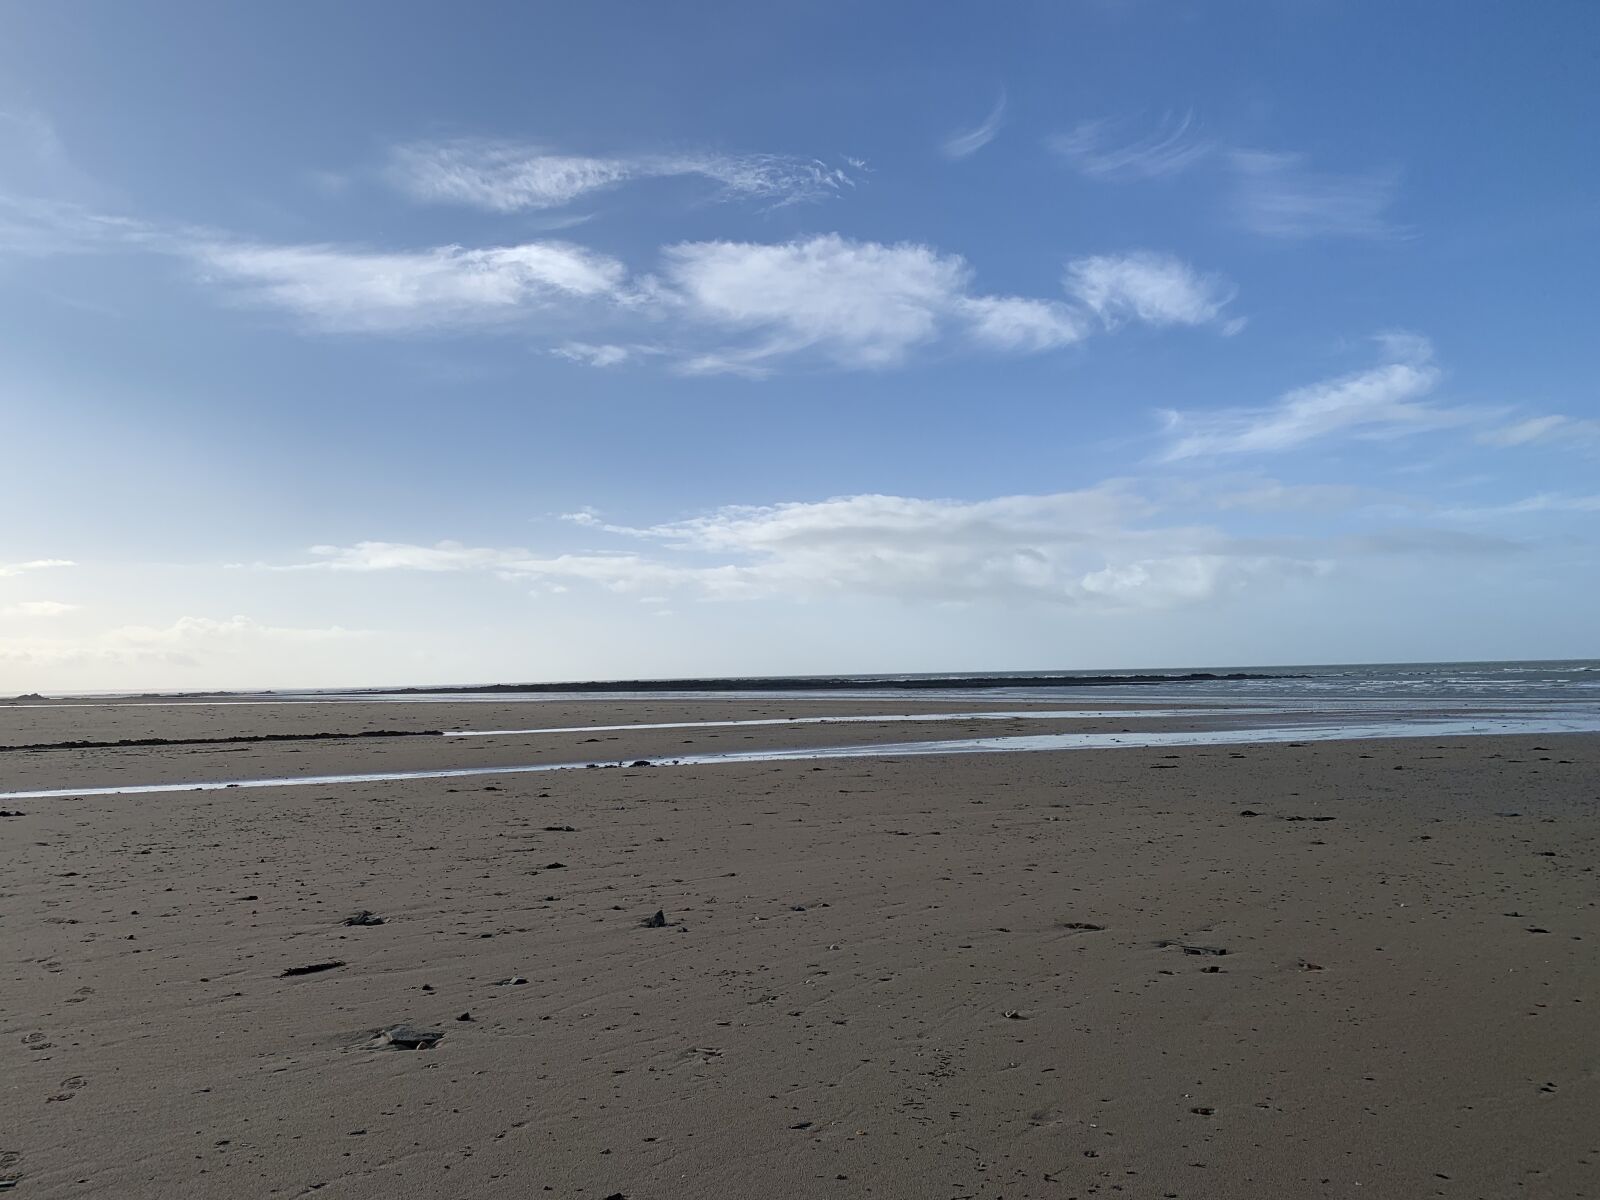 Apple iPhone XR sample photo. Sky, beach, sea photography